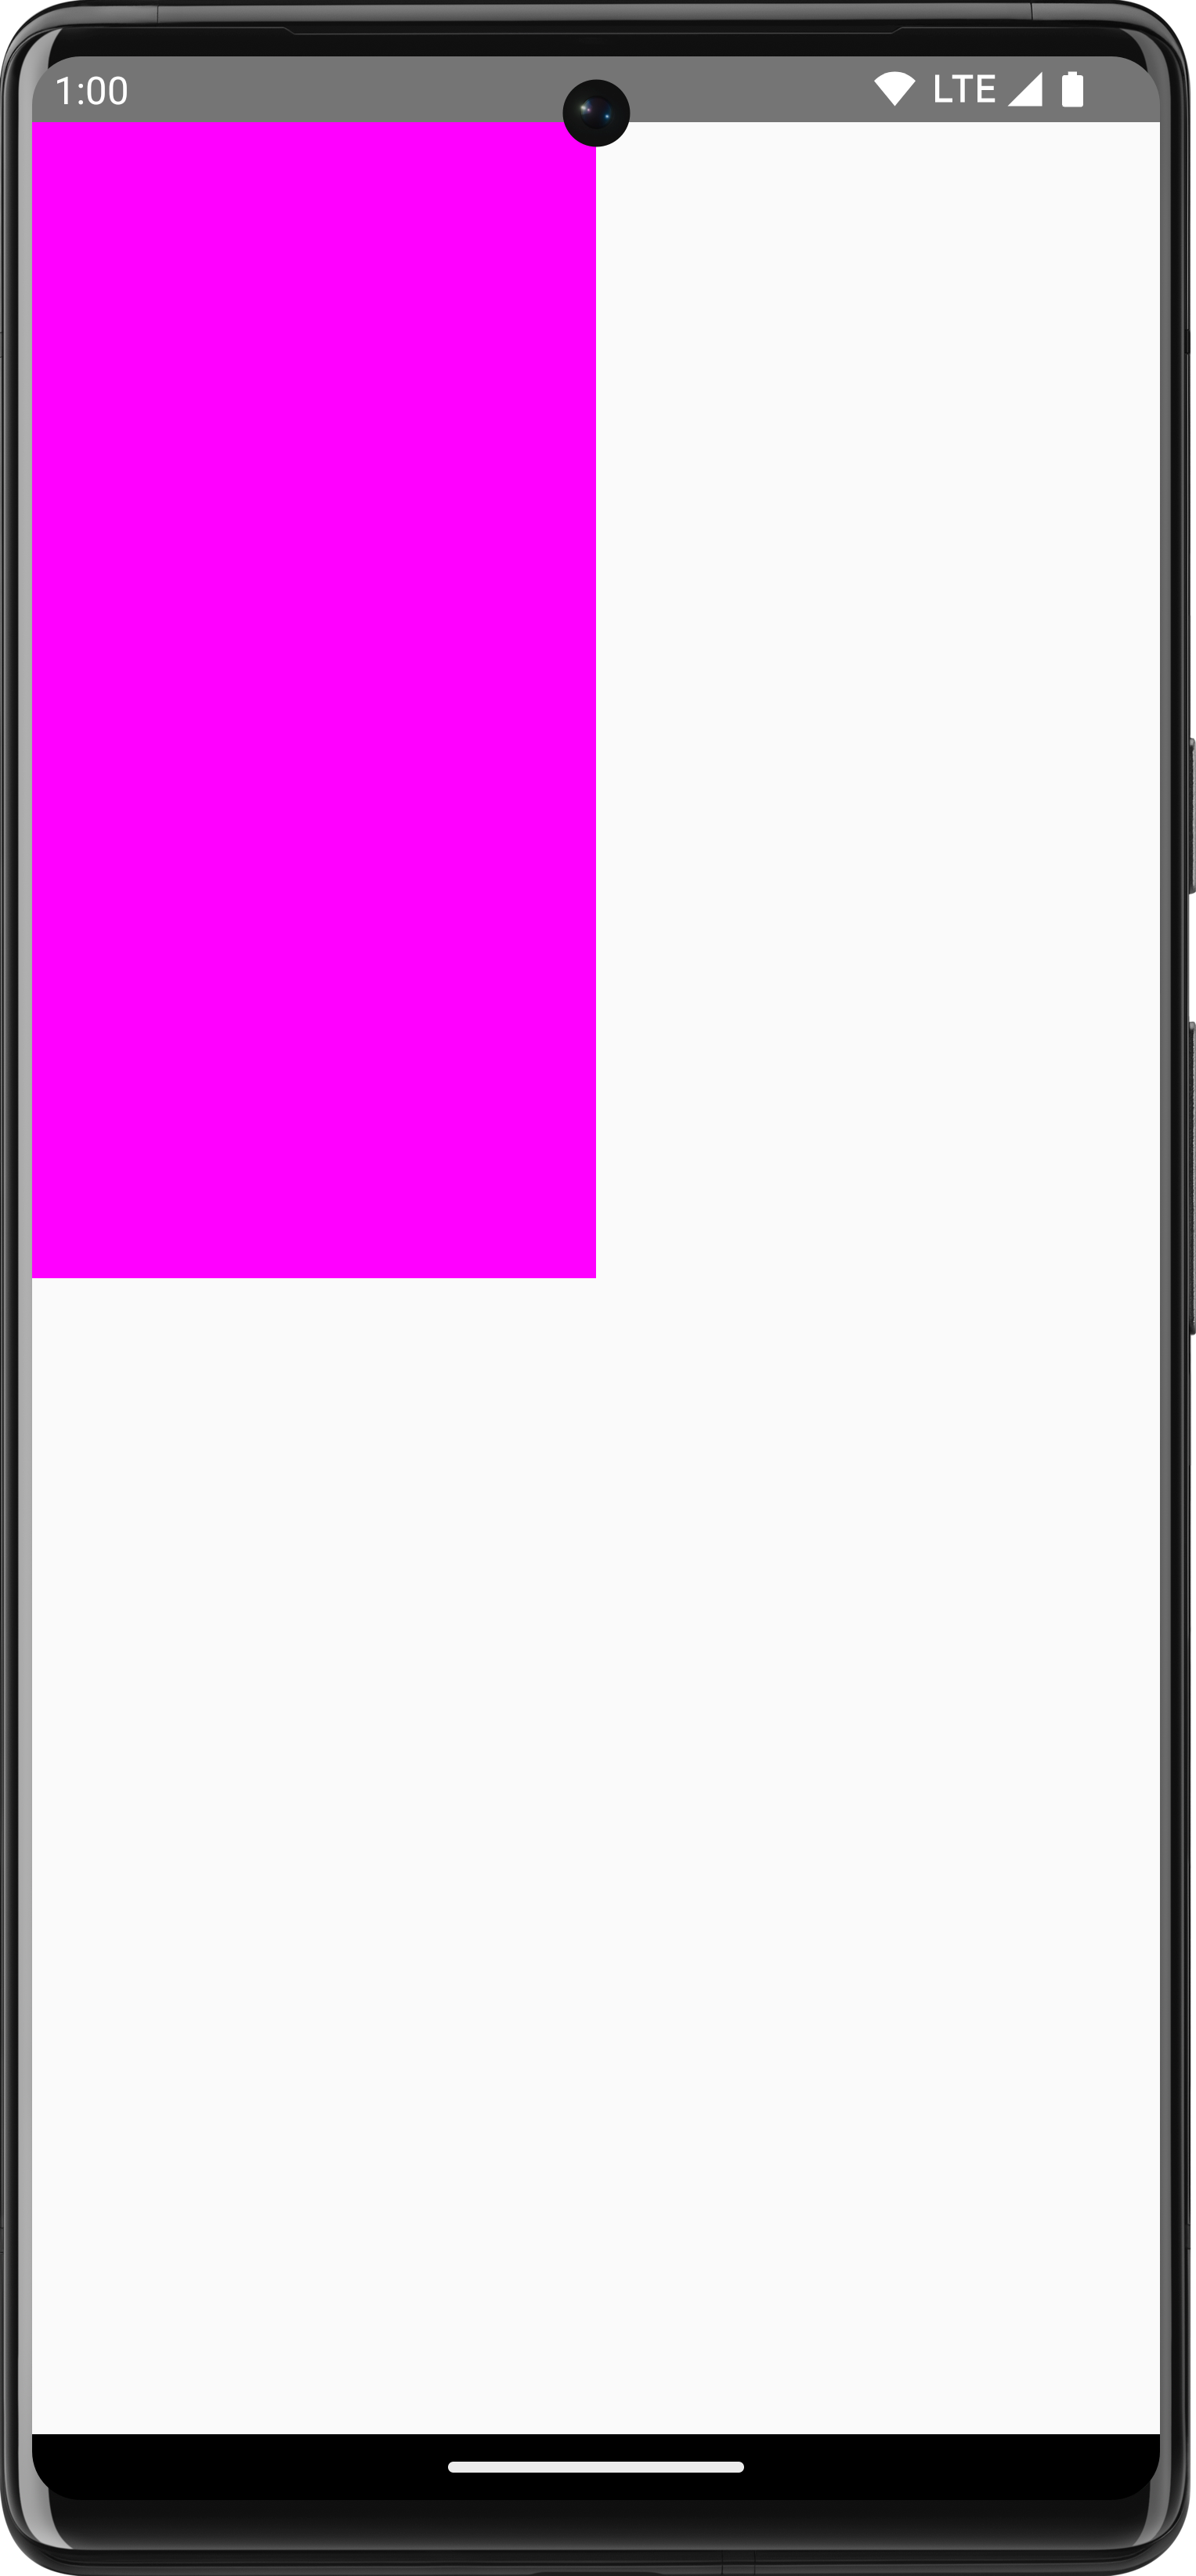 Retângulo rosa desenhado em um fundo branco que ocupa um quarto da tela